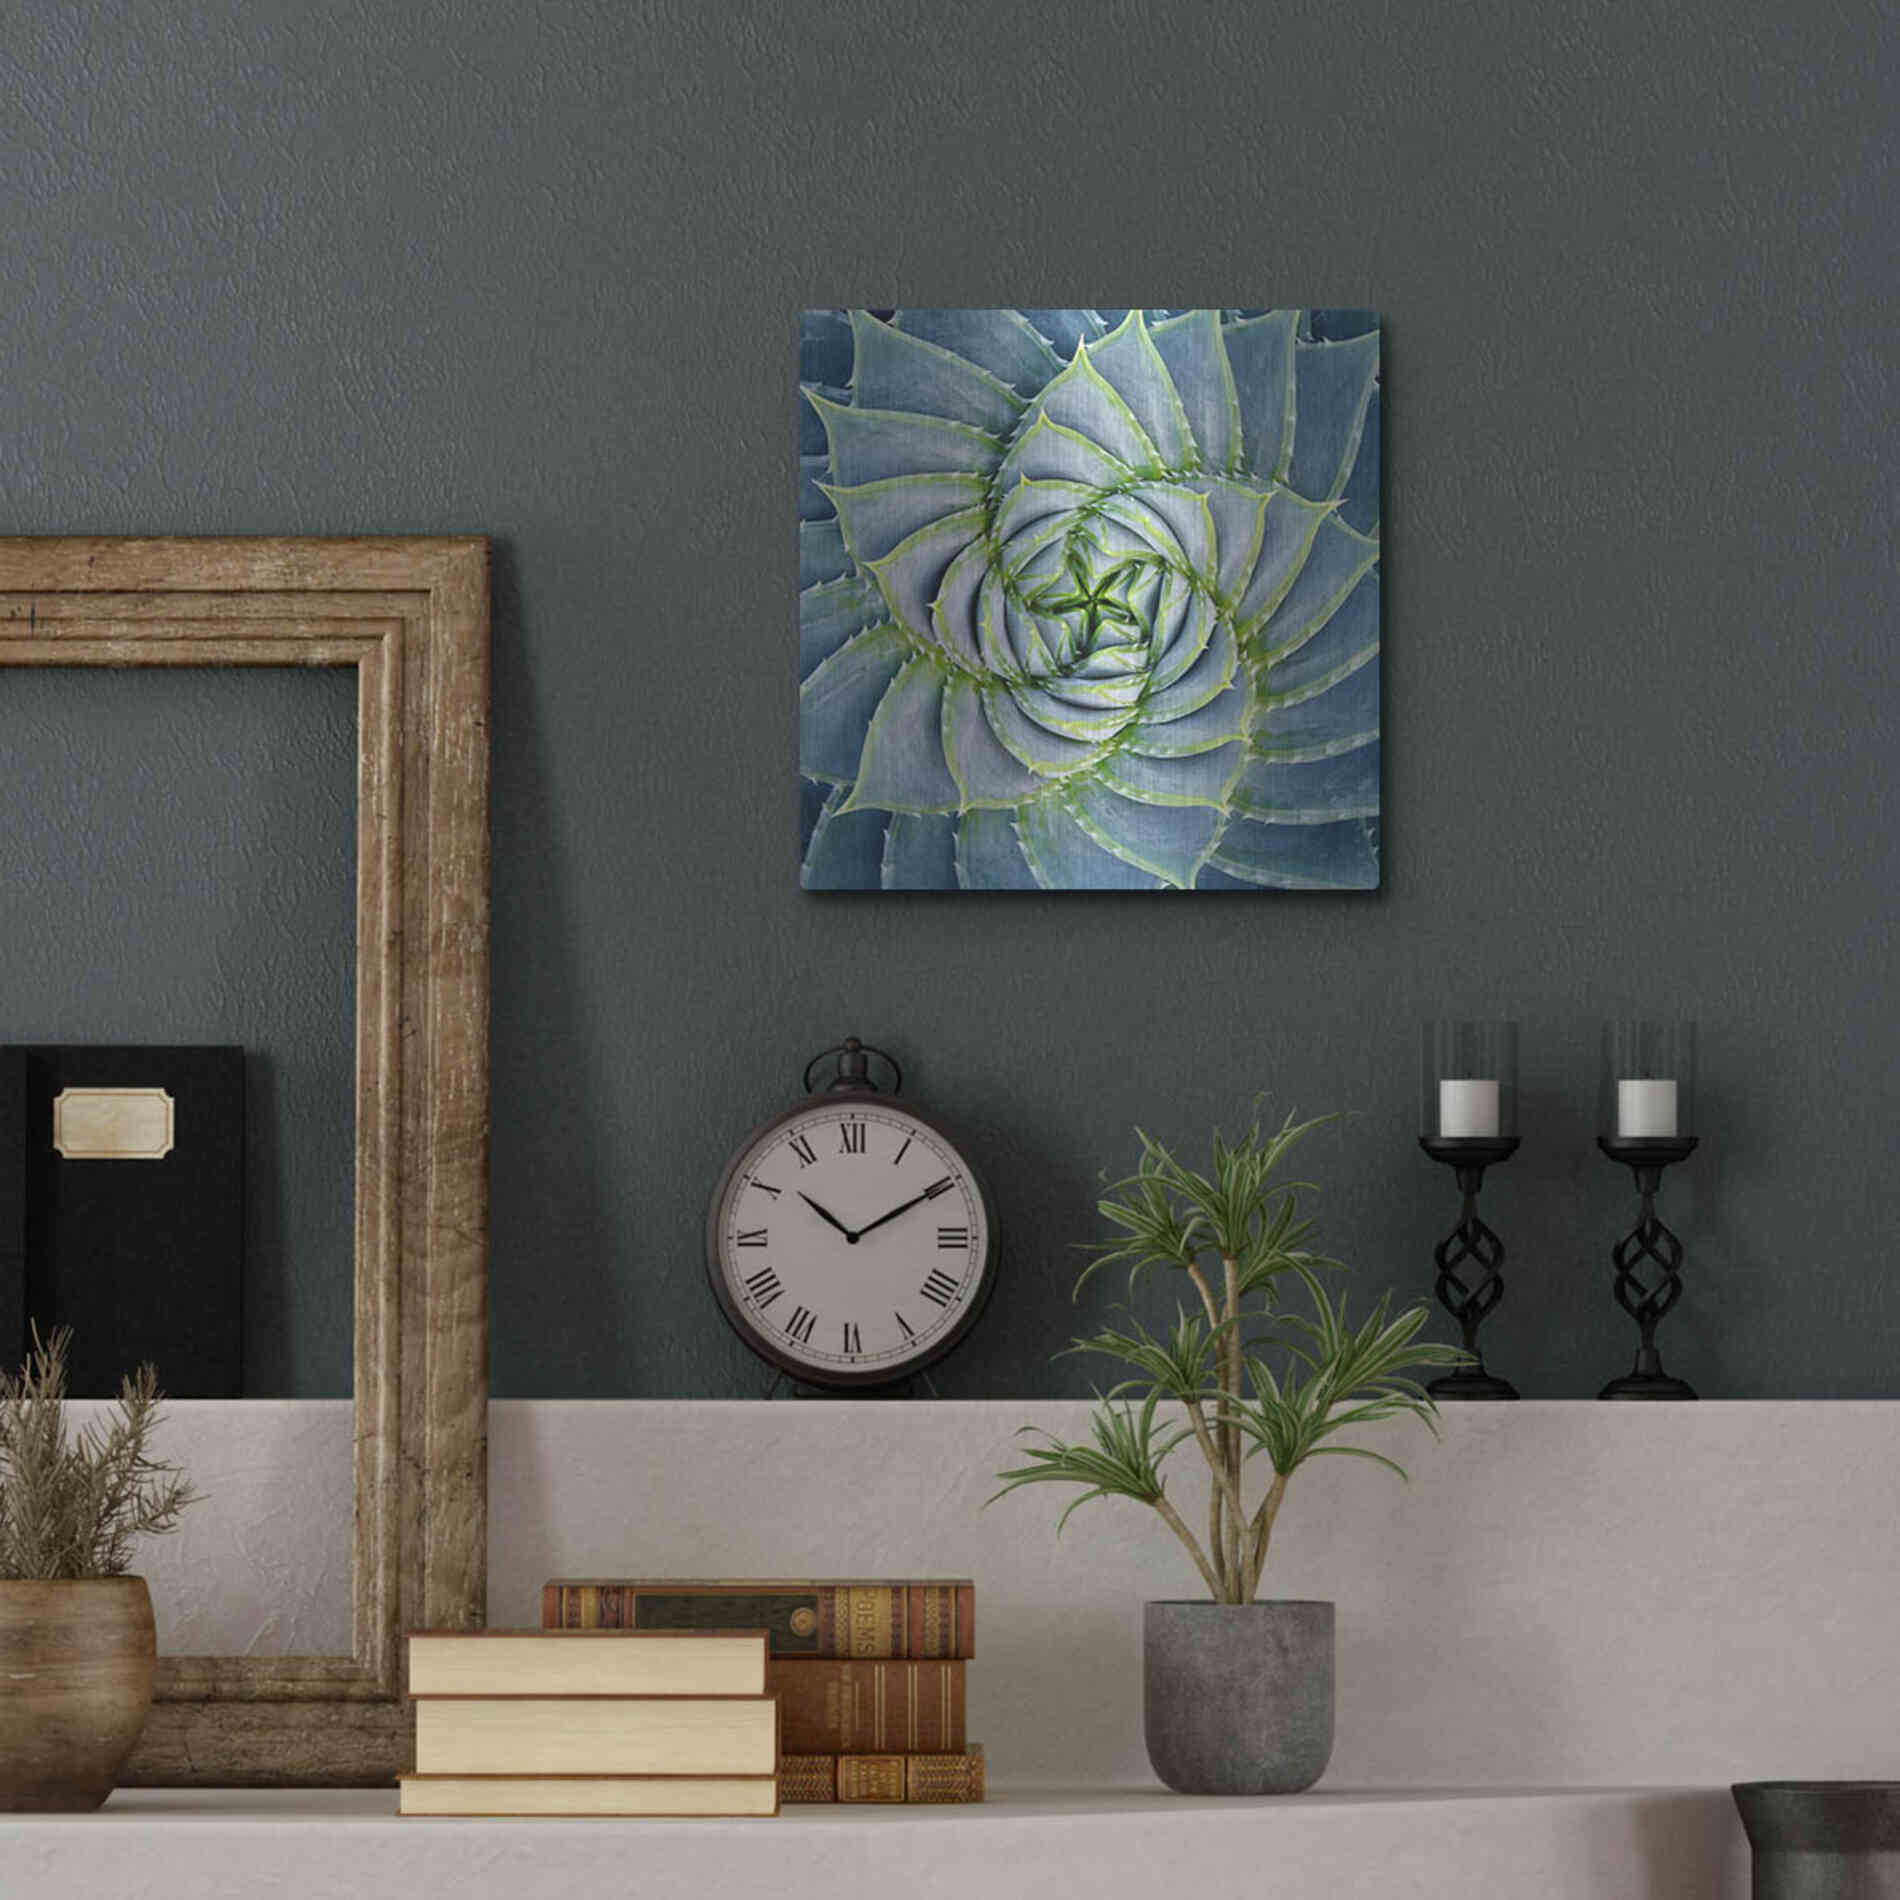 Luxe Metal Art 'Spiral Succulent' by Jan Bell Metal Wall Art,12x12